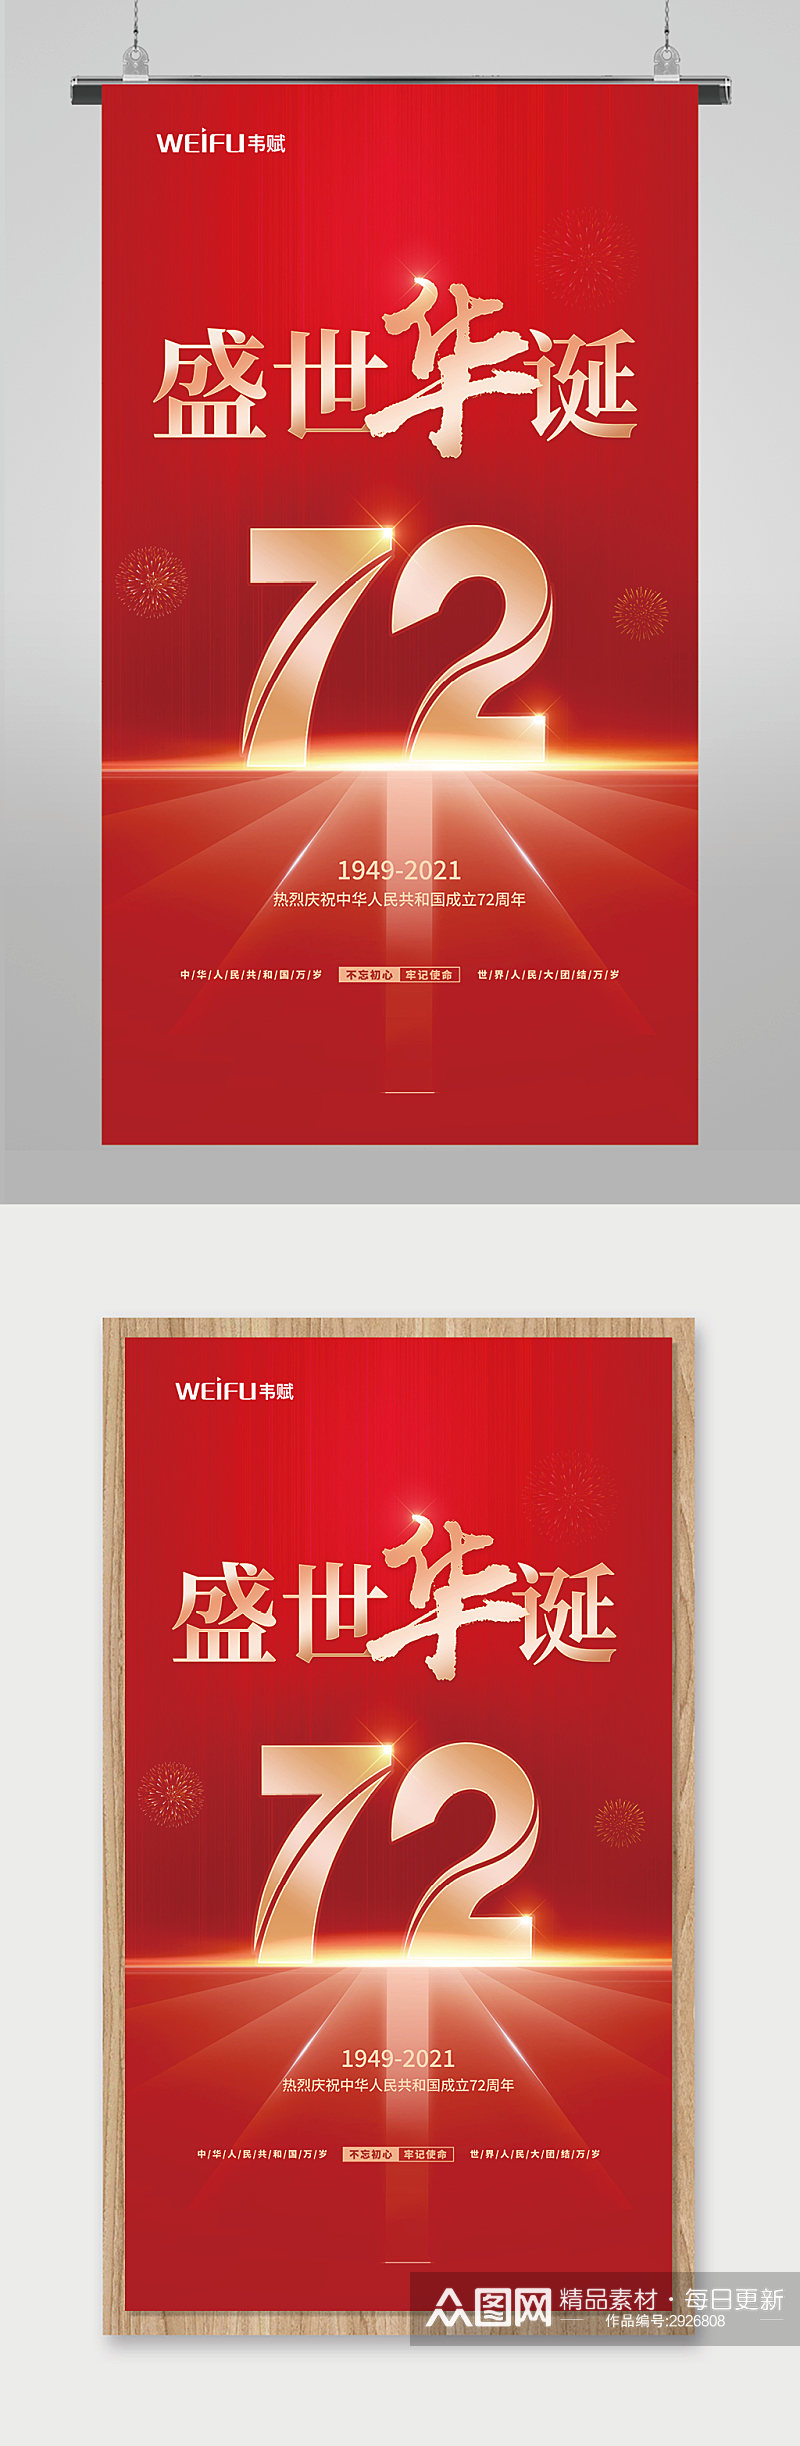 红色大气盛世华诞国庆节宣传海报素材